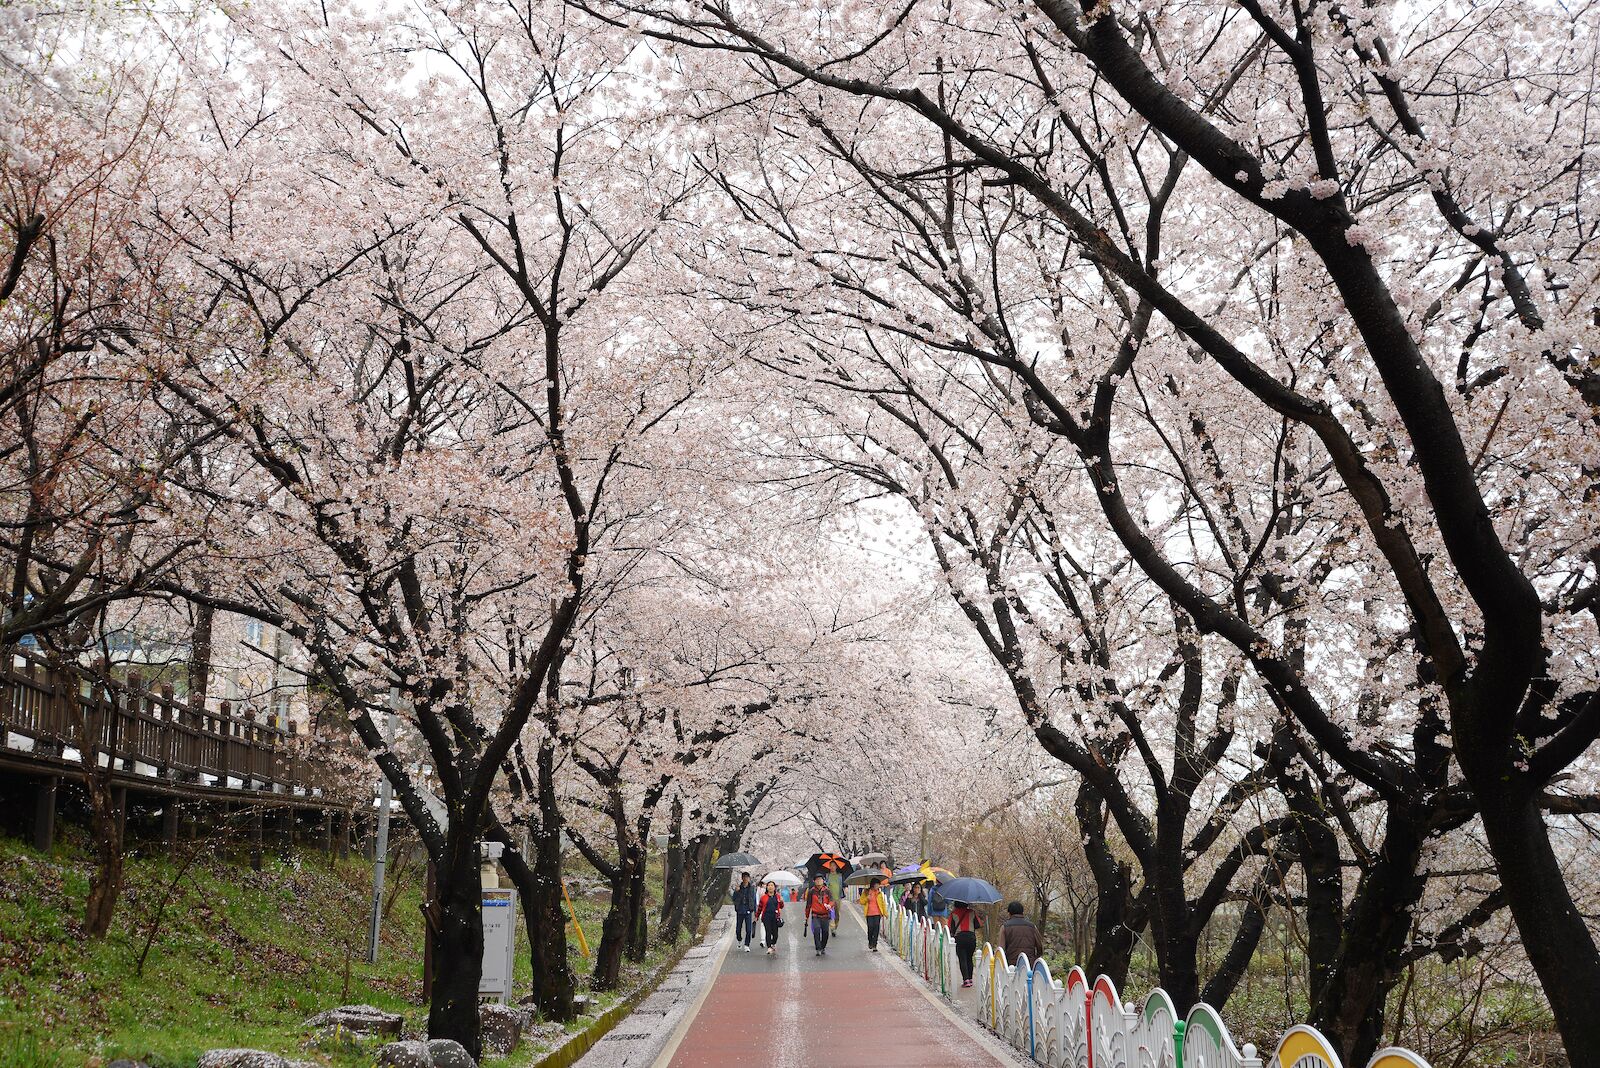 south-korea-cherry-blossom